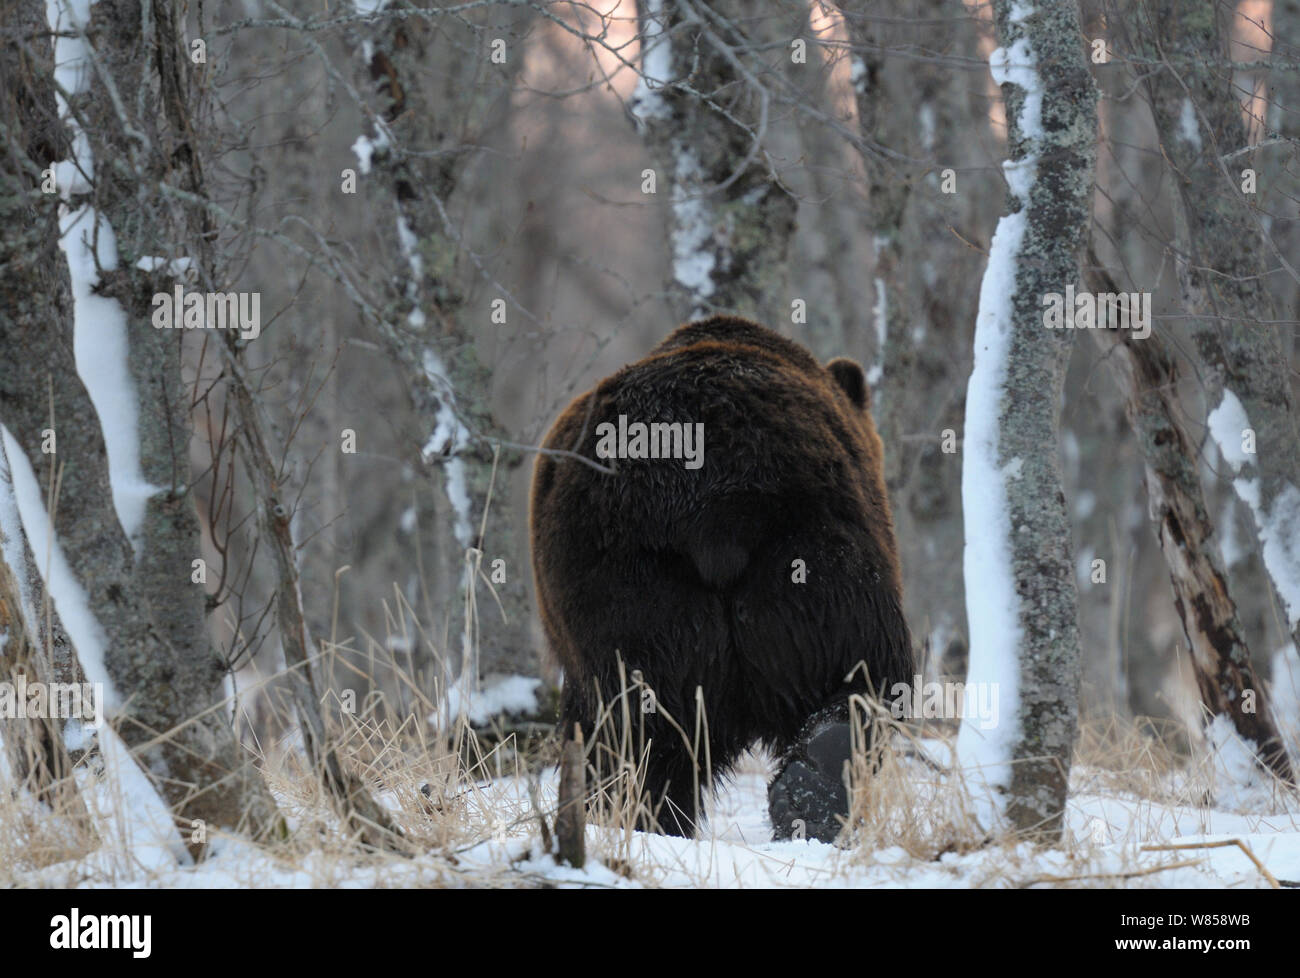 Kamchatka (Ours brun Ursus arctos beringianus) marche à travers bois enneigés. La réserve naturelle de Kronotsky Zapovednik, péninsule du Kamchatka, Extrême-Orient russe, mars. Banque D'Images